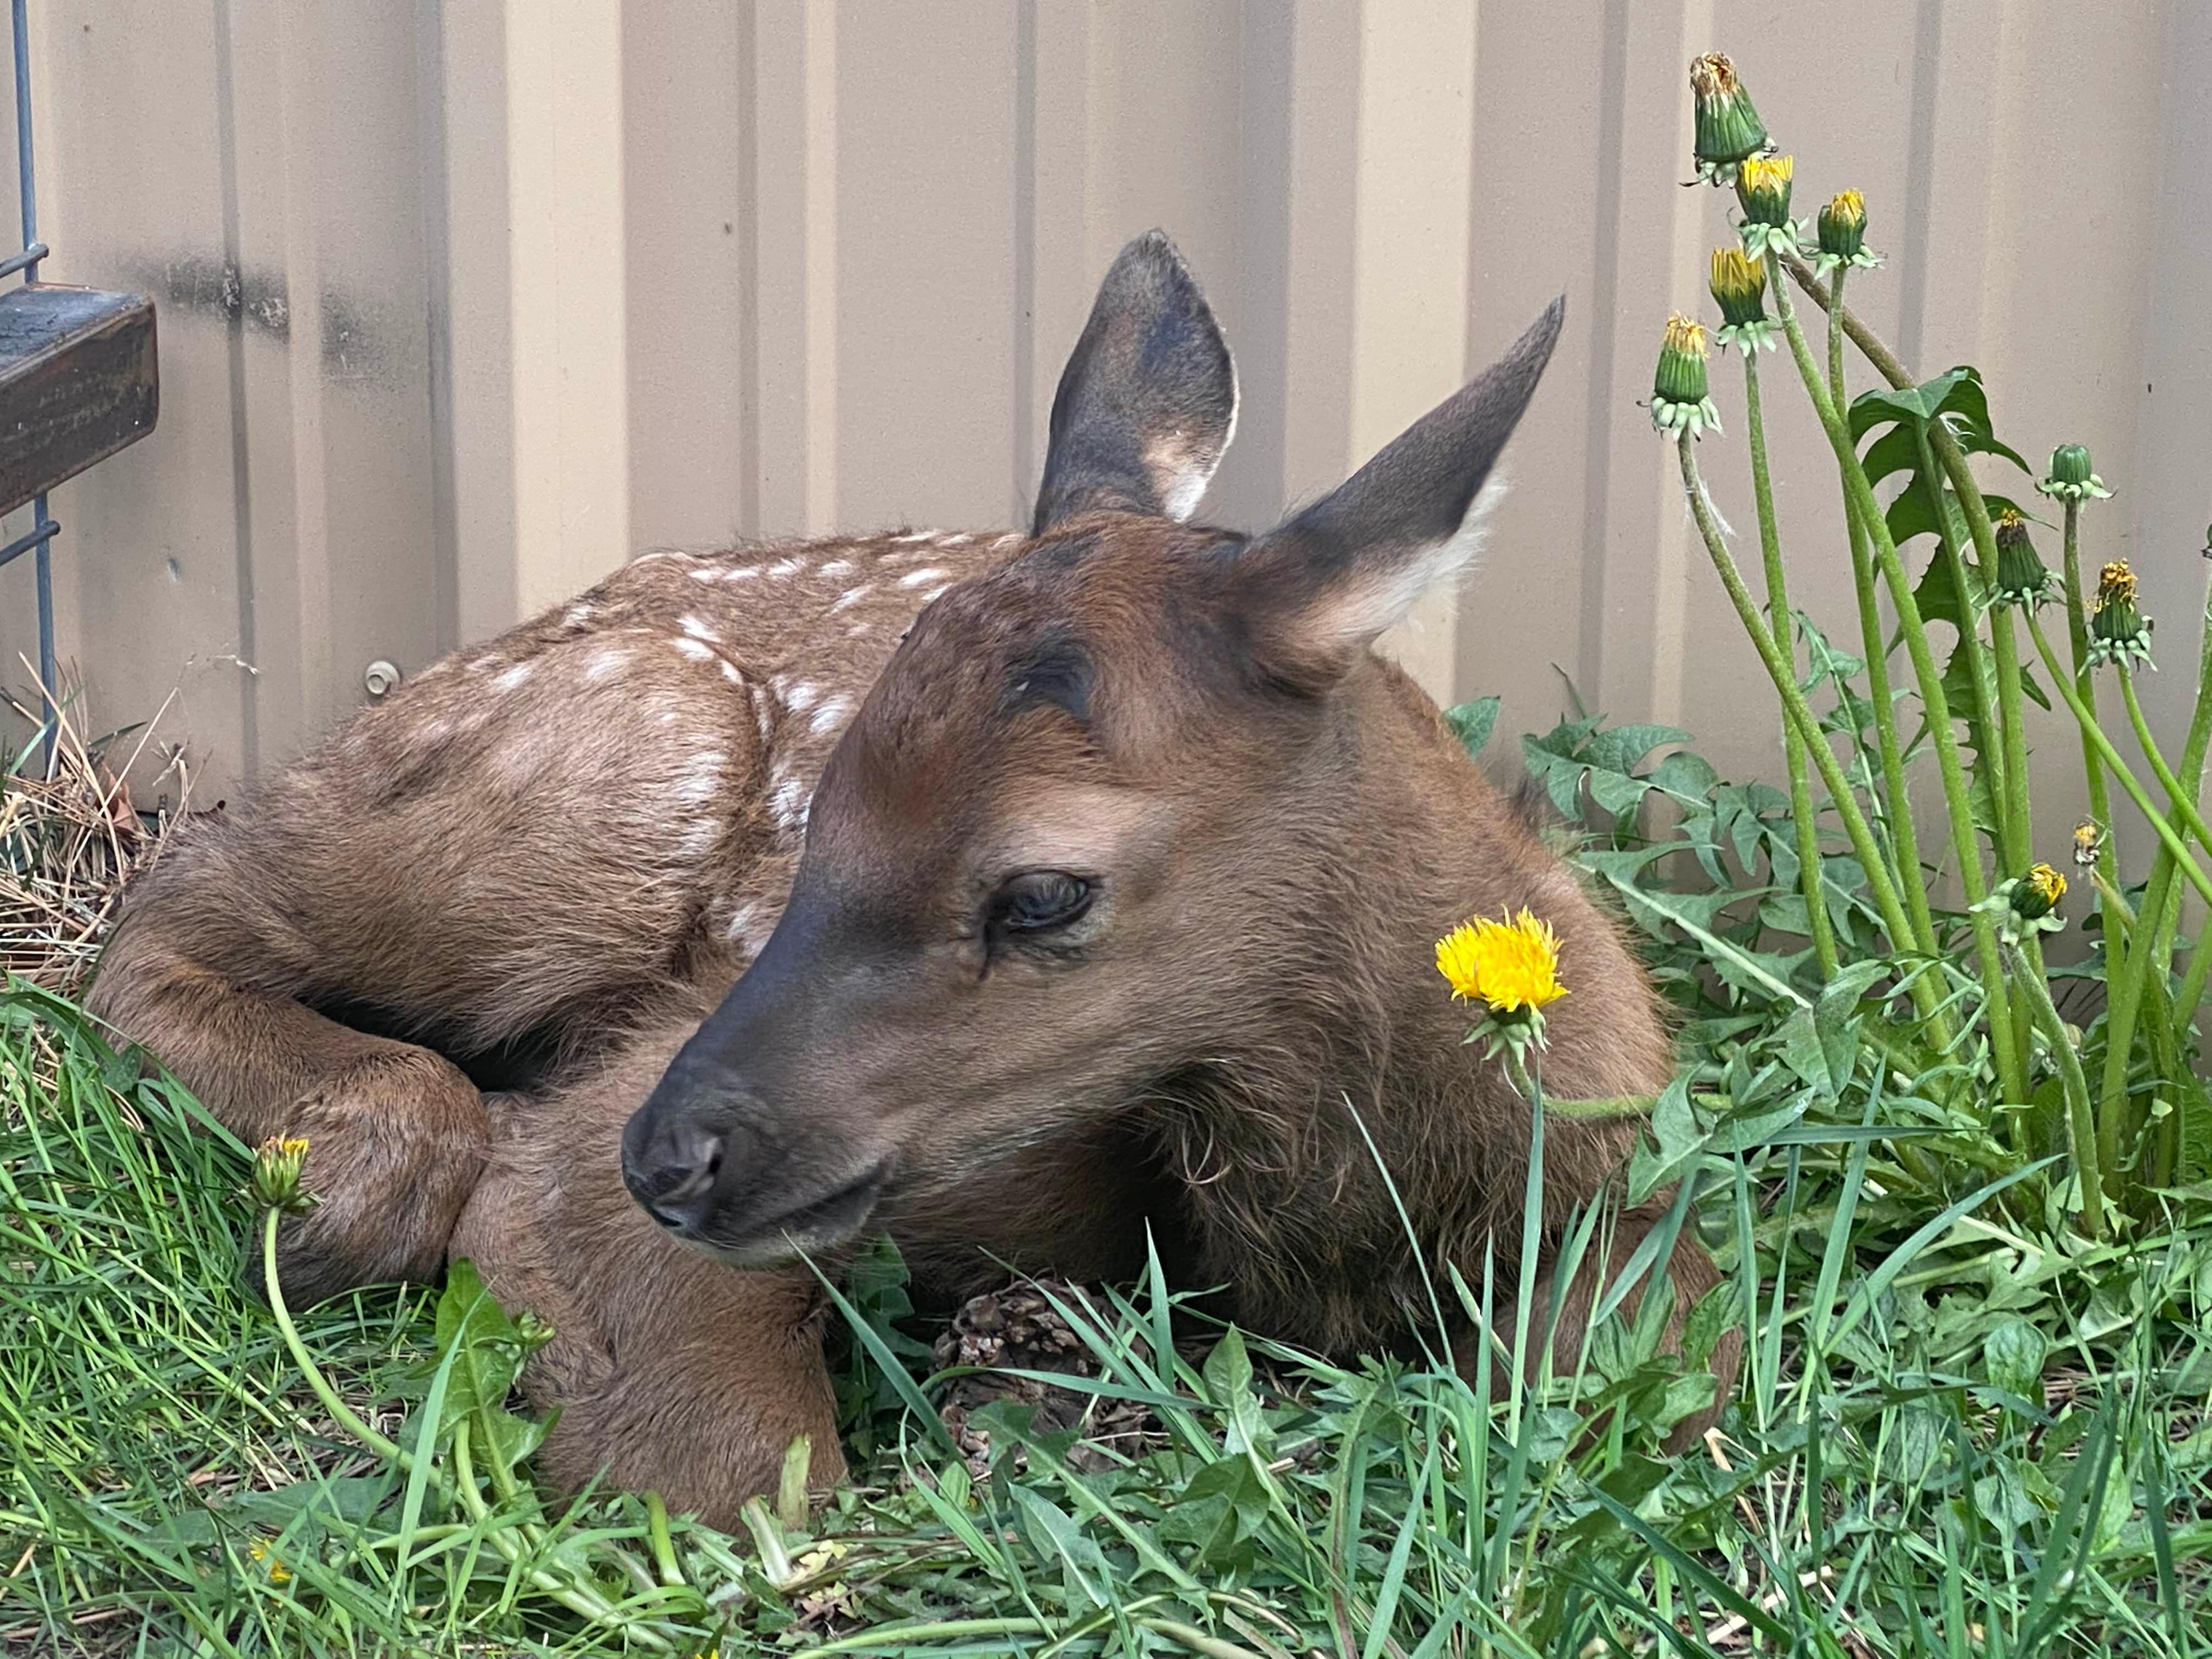 An elk calf rests on grass